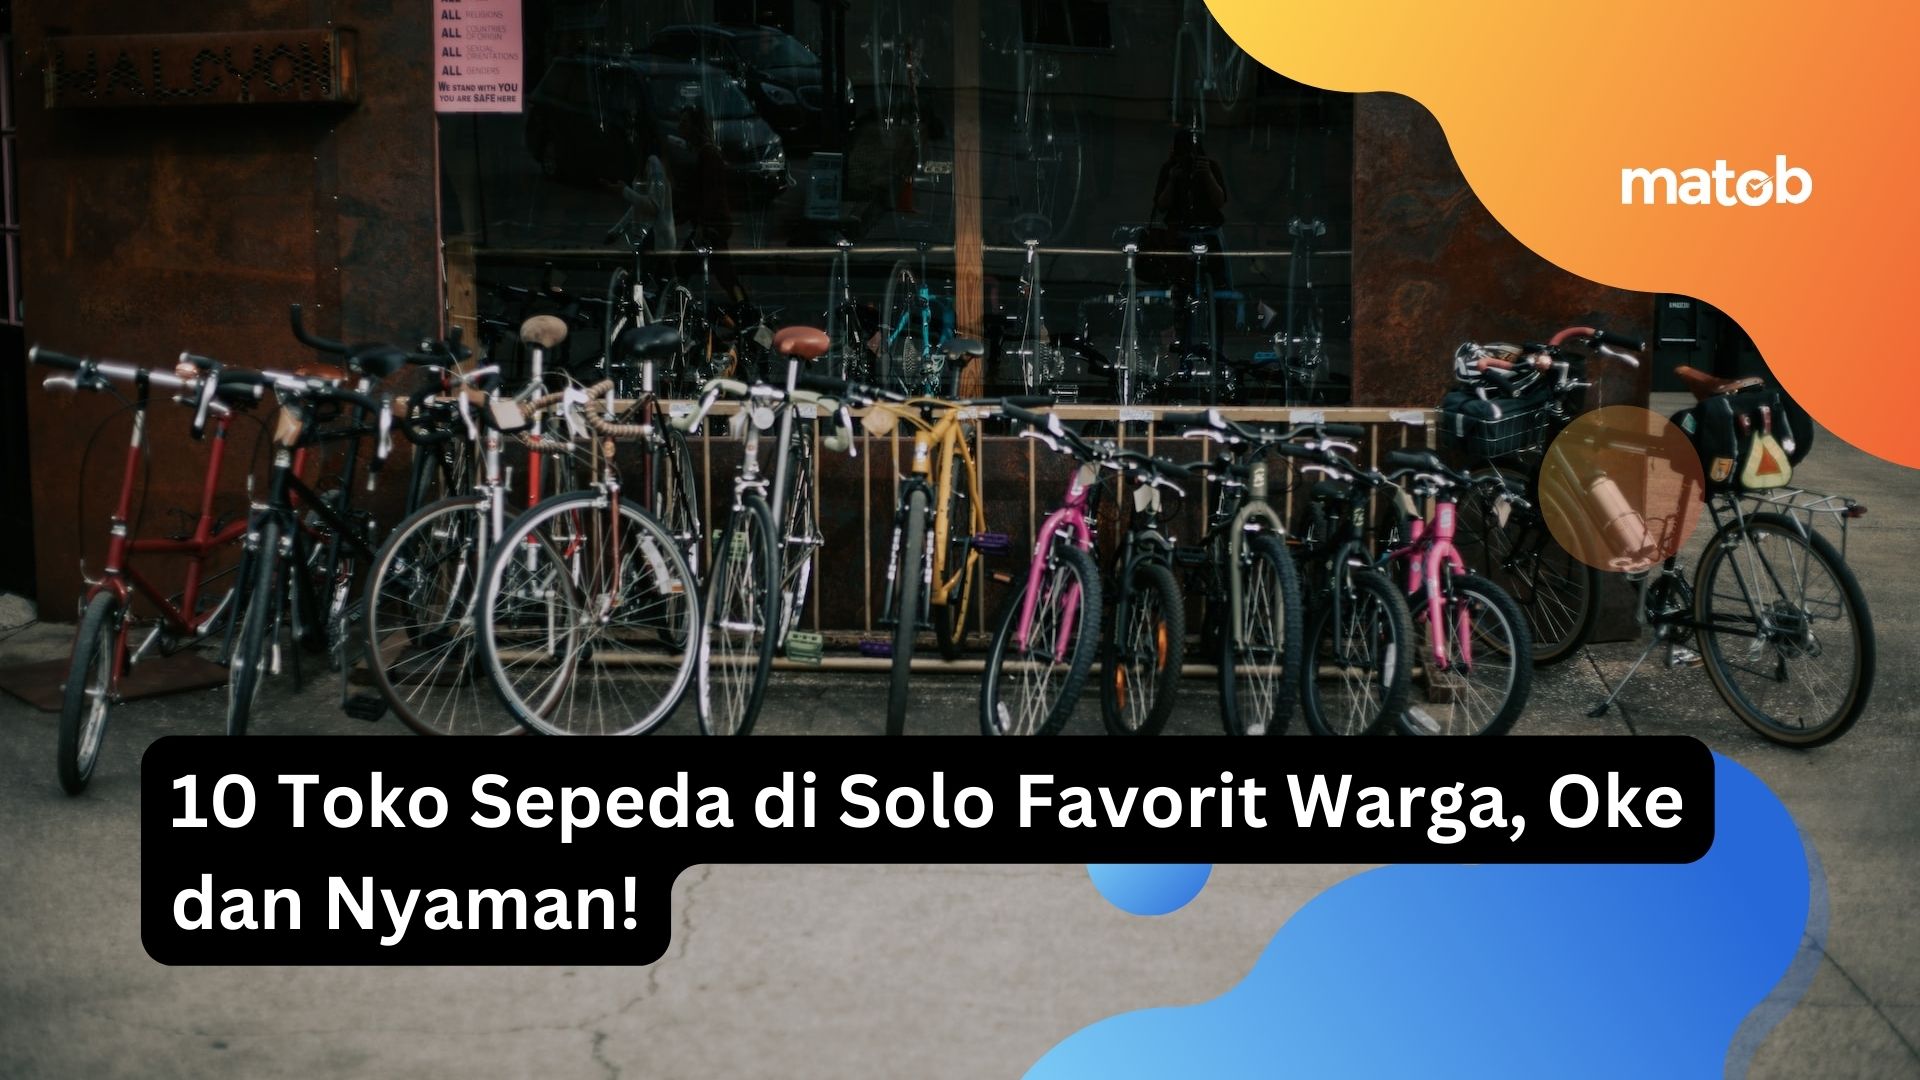 10 Toko Sepeda di Solo Favorit Warga, Oke dan Nyaman!